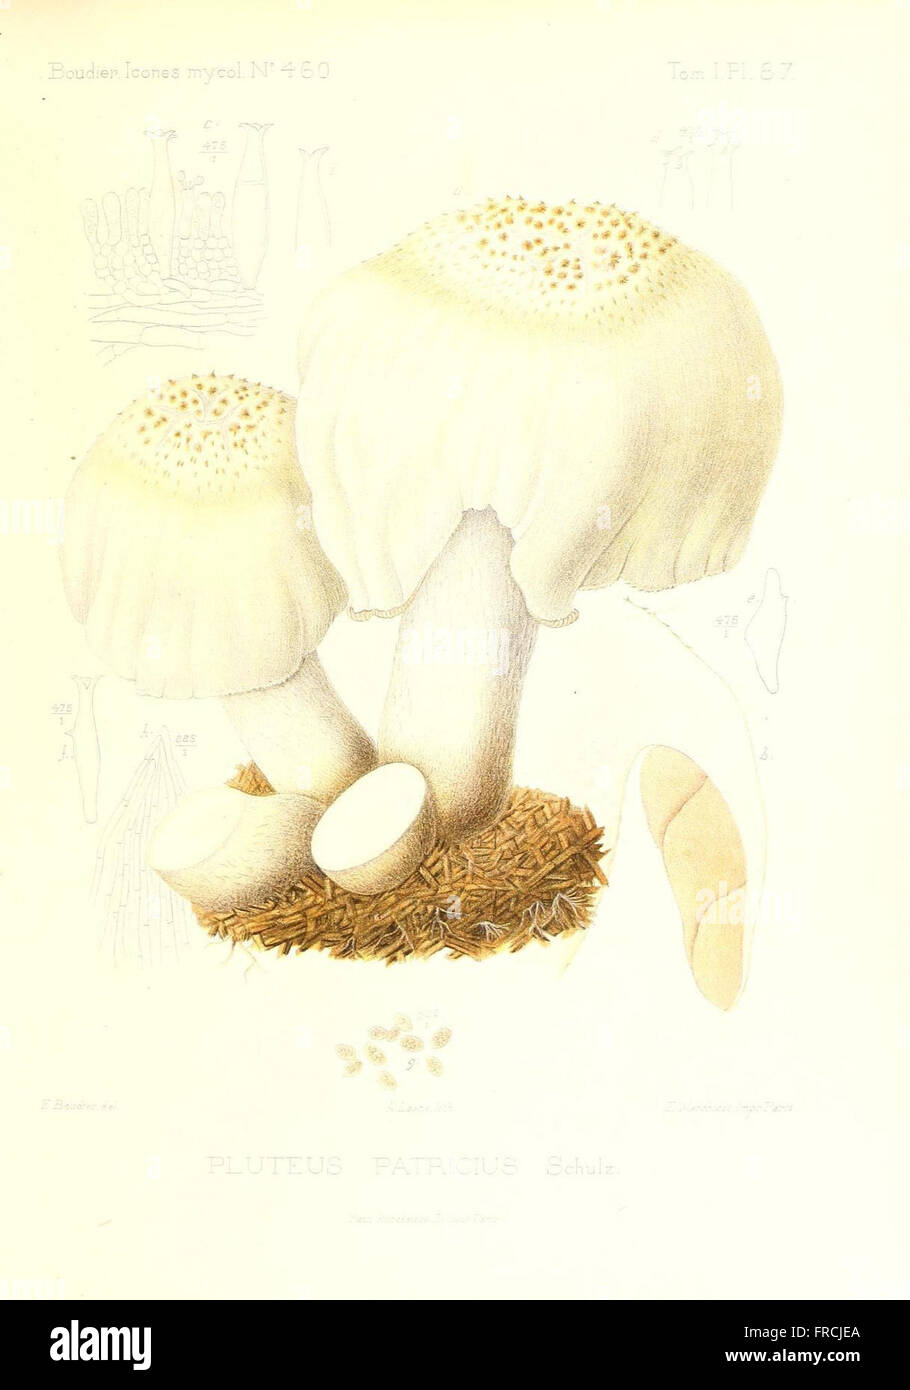 Icones mycologicC3A6, ou Iconographie des champignons de France principalement Discomycetes (Pl. 87) Stock Photo